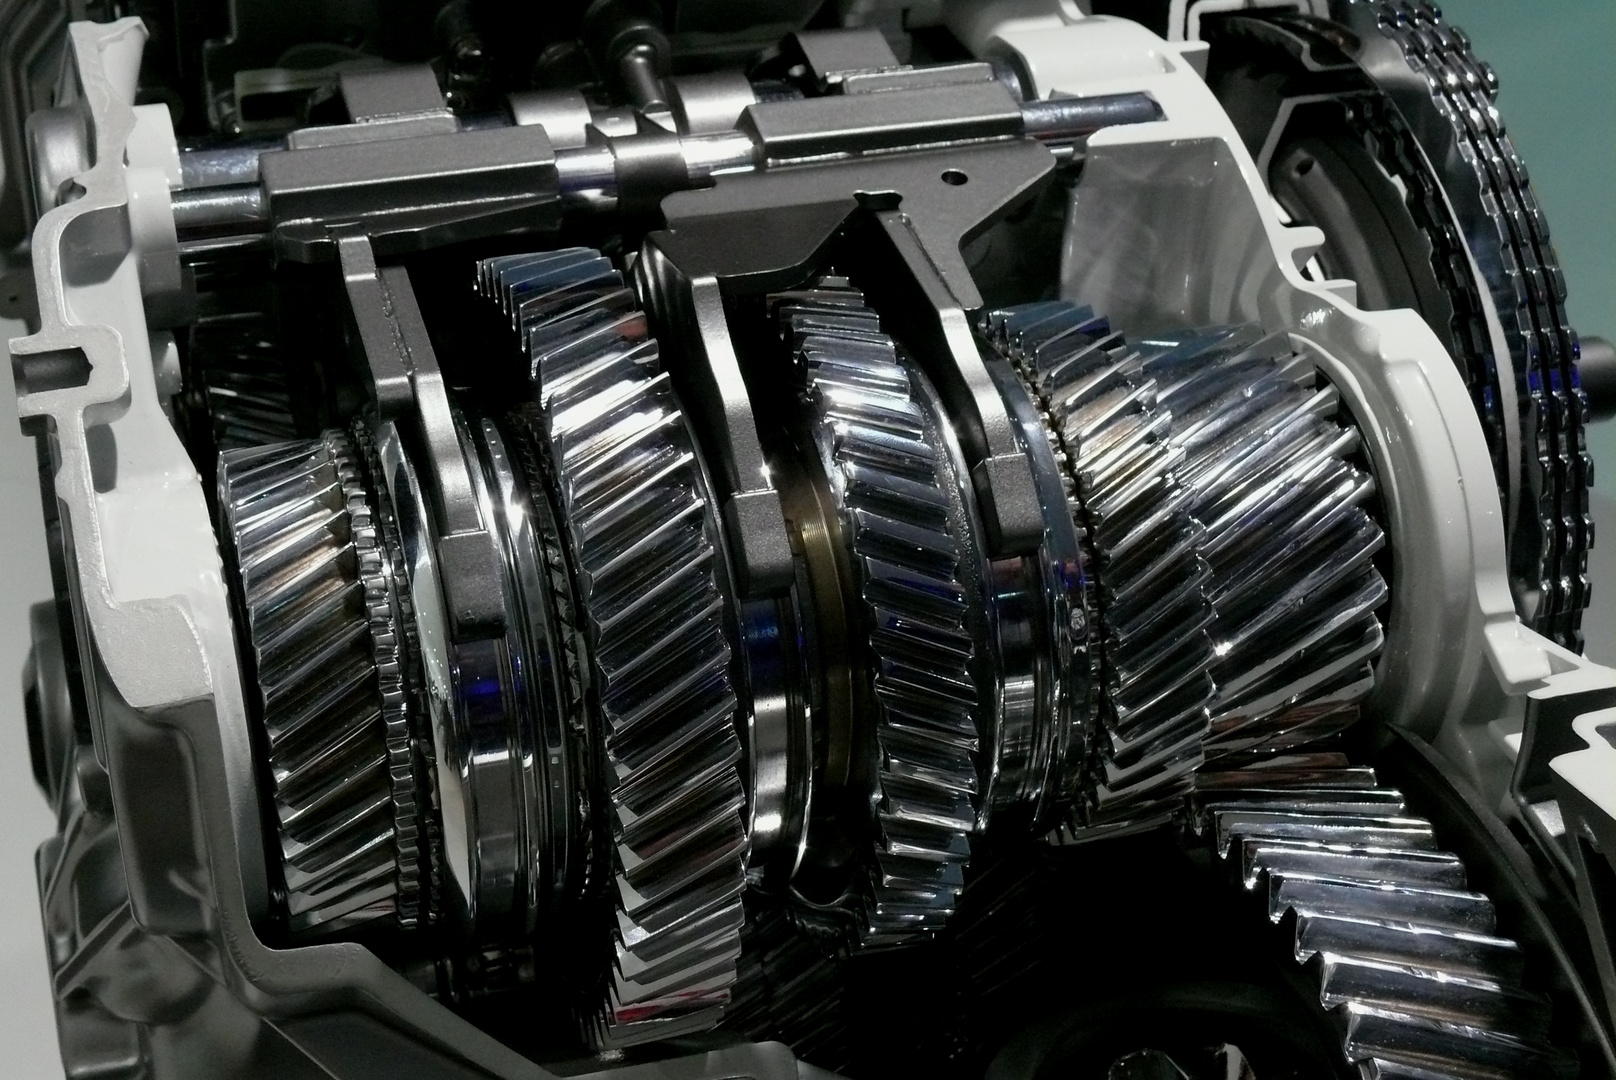 Mercedes-Benz Getriebe - Zahnräder Foto & Bild  autos & zweiräder, details  und kleinigkeiten, verkehr & fahrzeuge Bilder auf fotocommunity